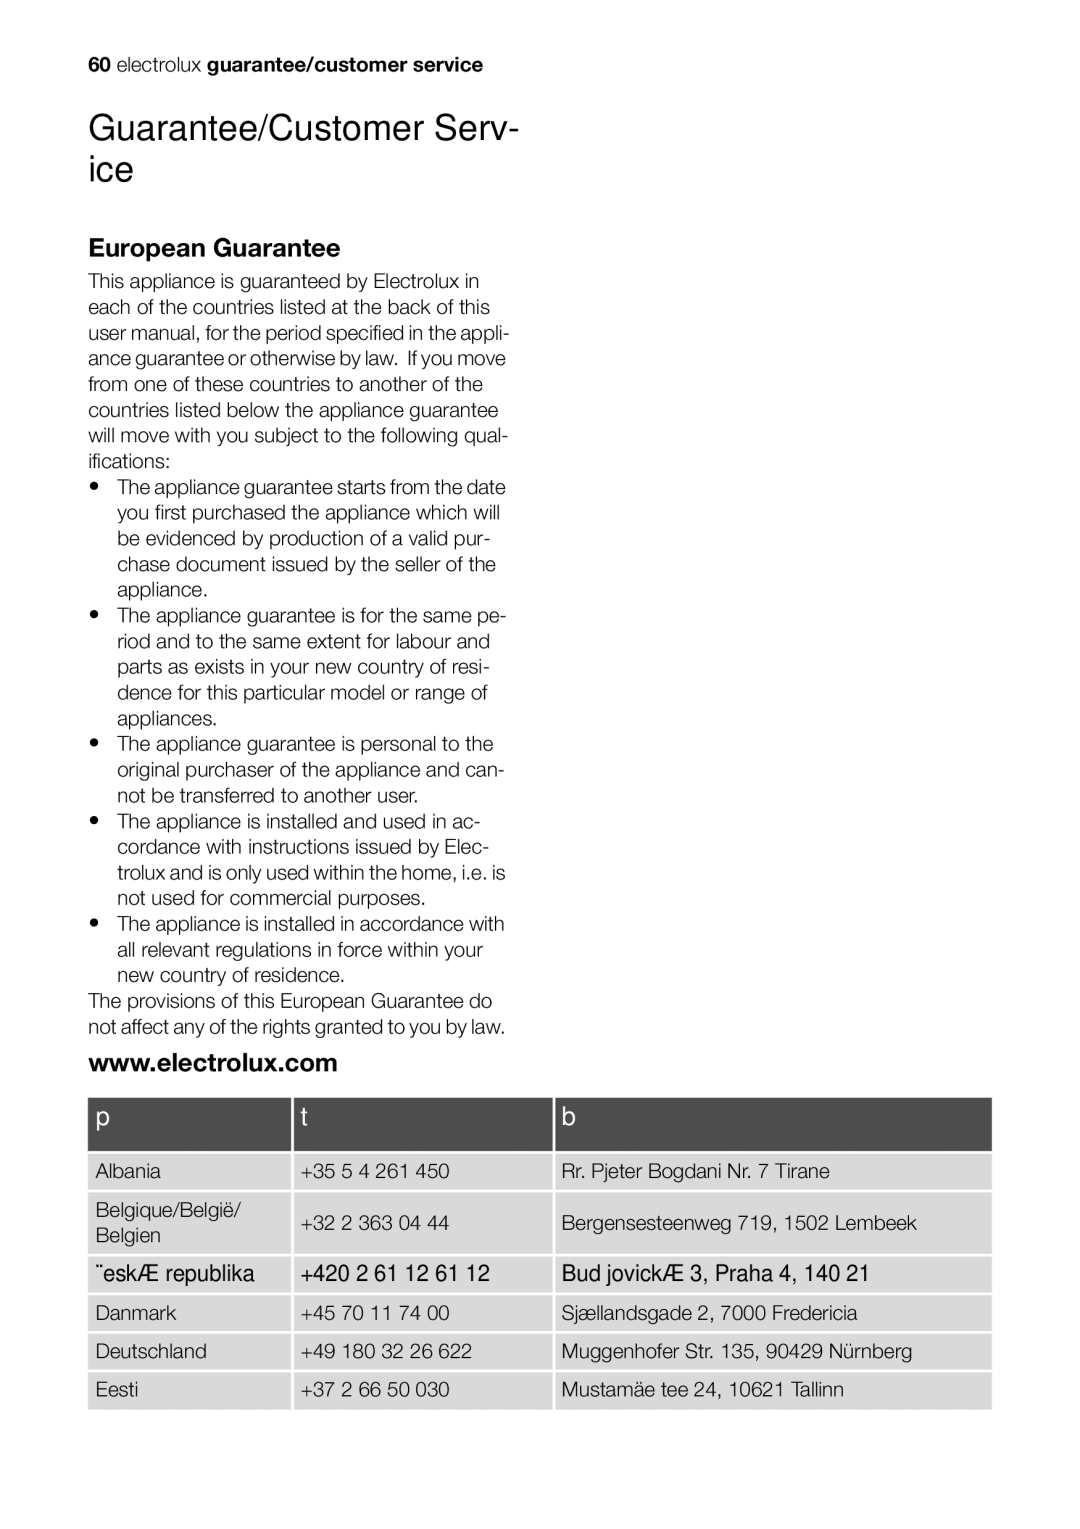 Electrolux EOC65101 user manual Guarantee/Customer Serv- ice, European Guarantee 